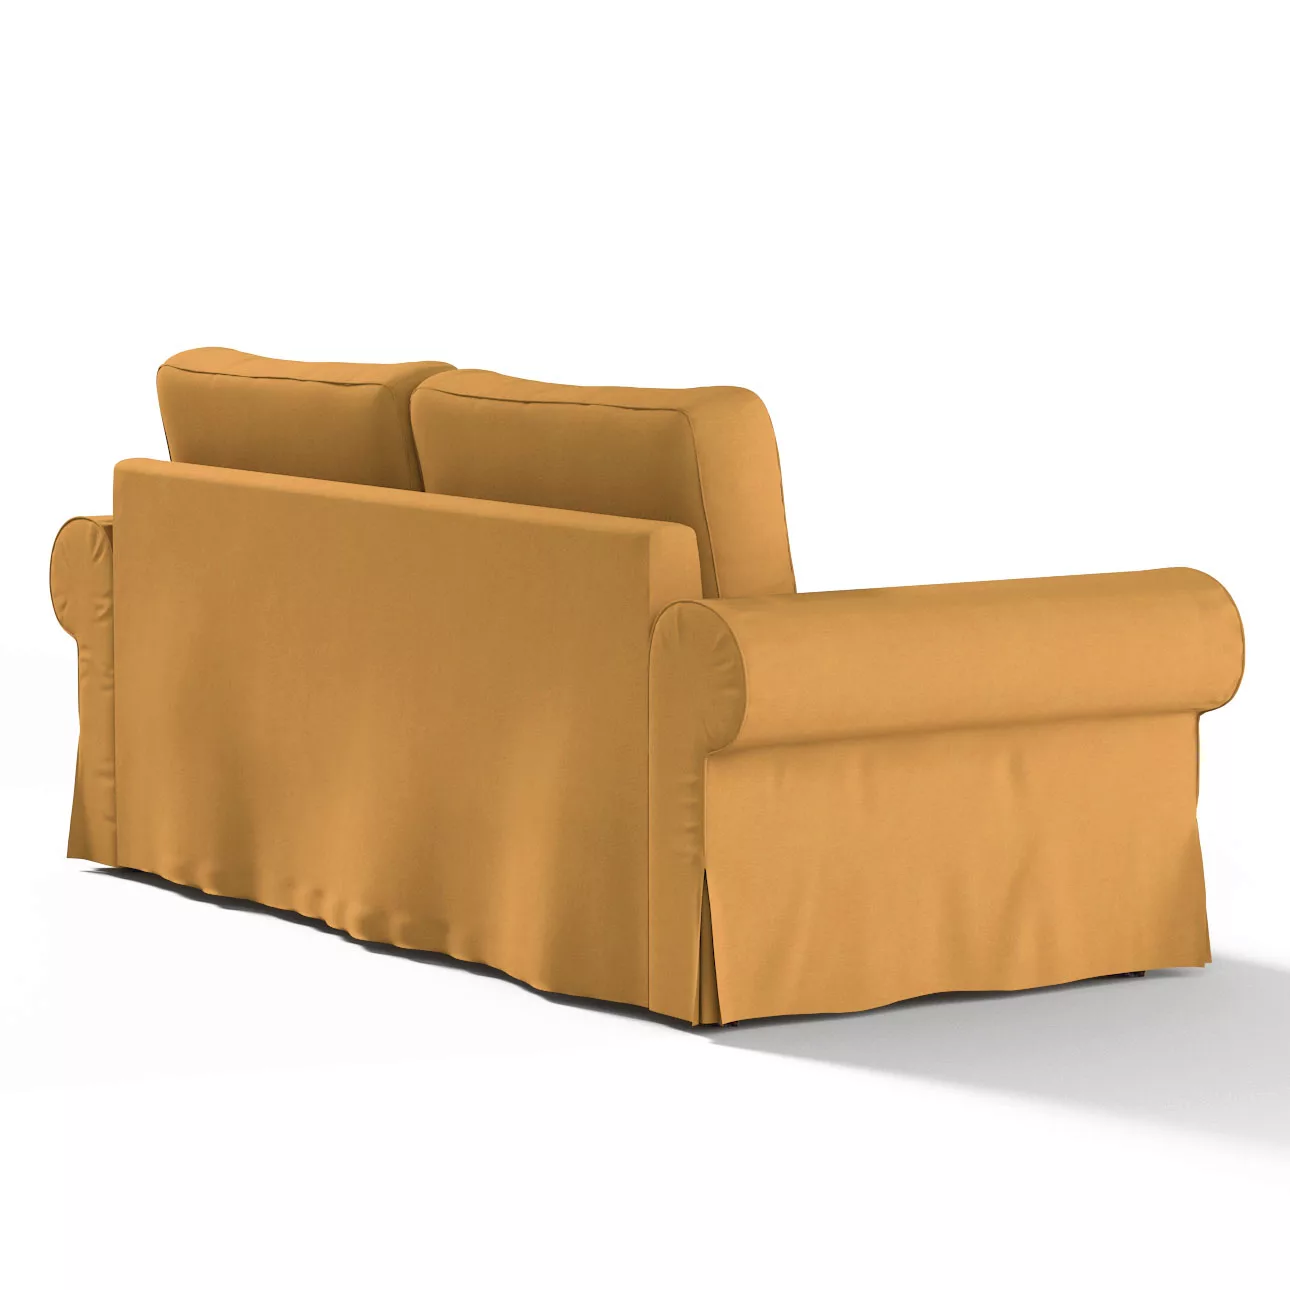 Bezug für Backabro 3-Sitzer Sofa ausklappbar, senffarbe, Bezug für Backabro günstig online kaufen